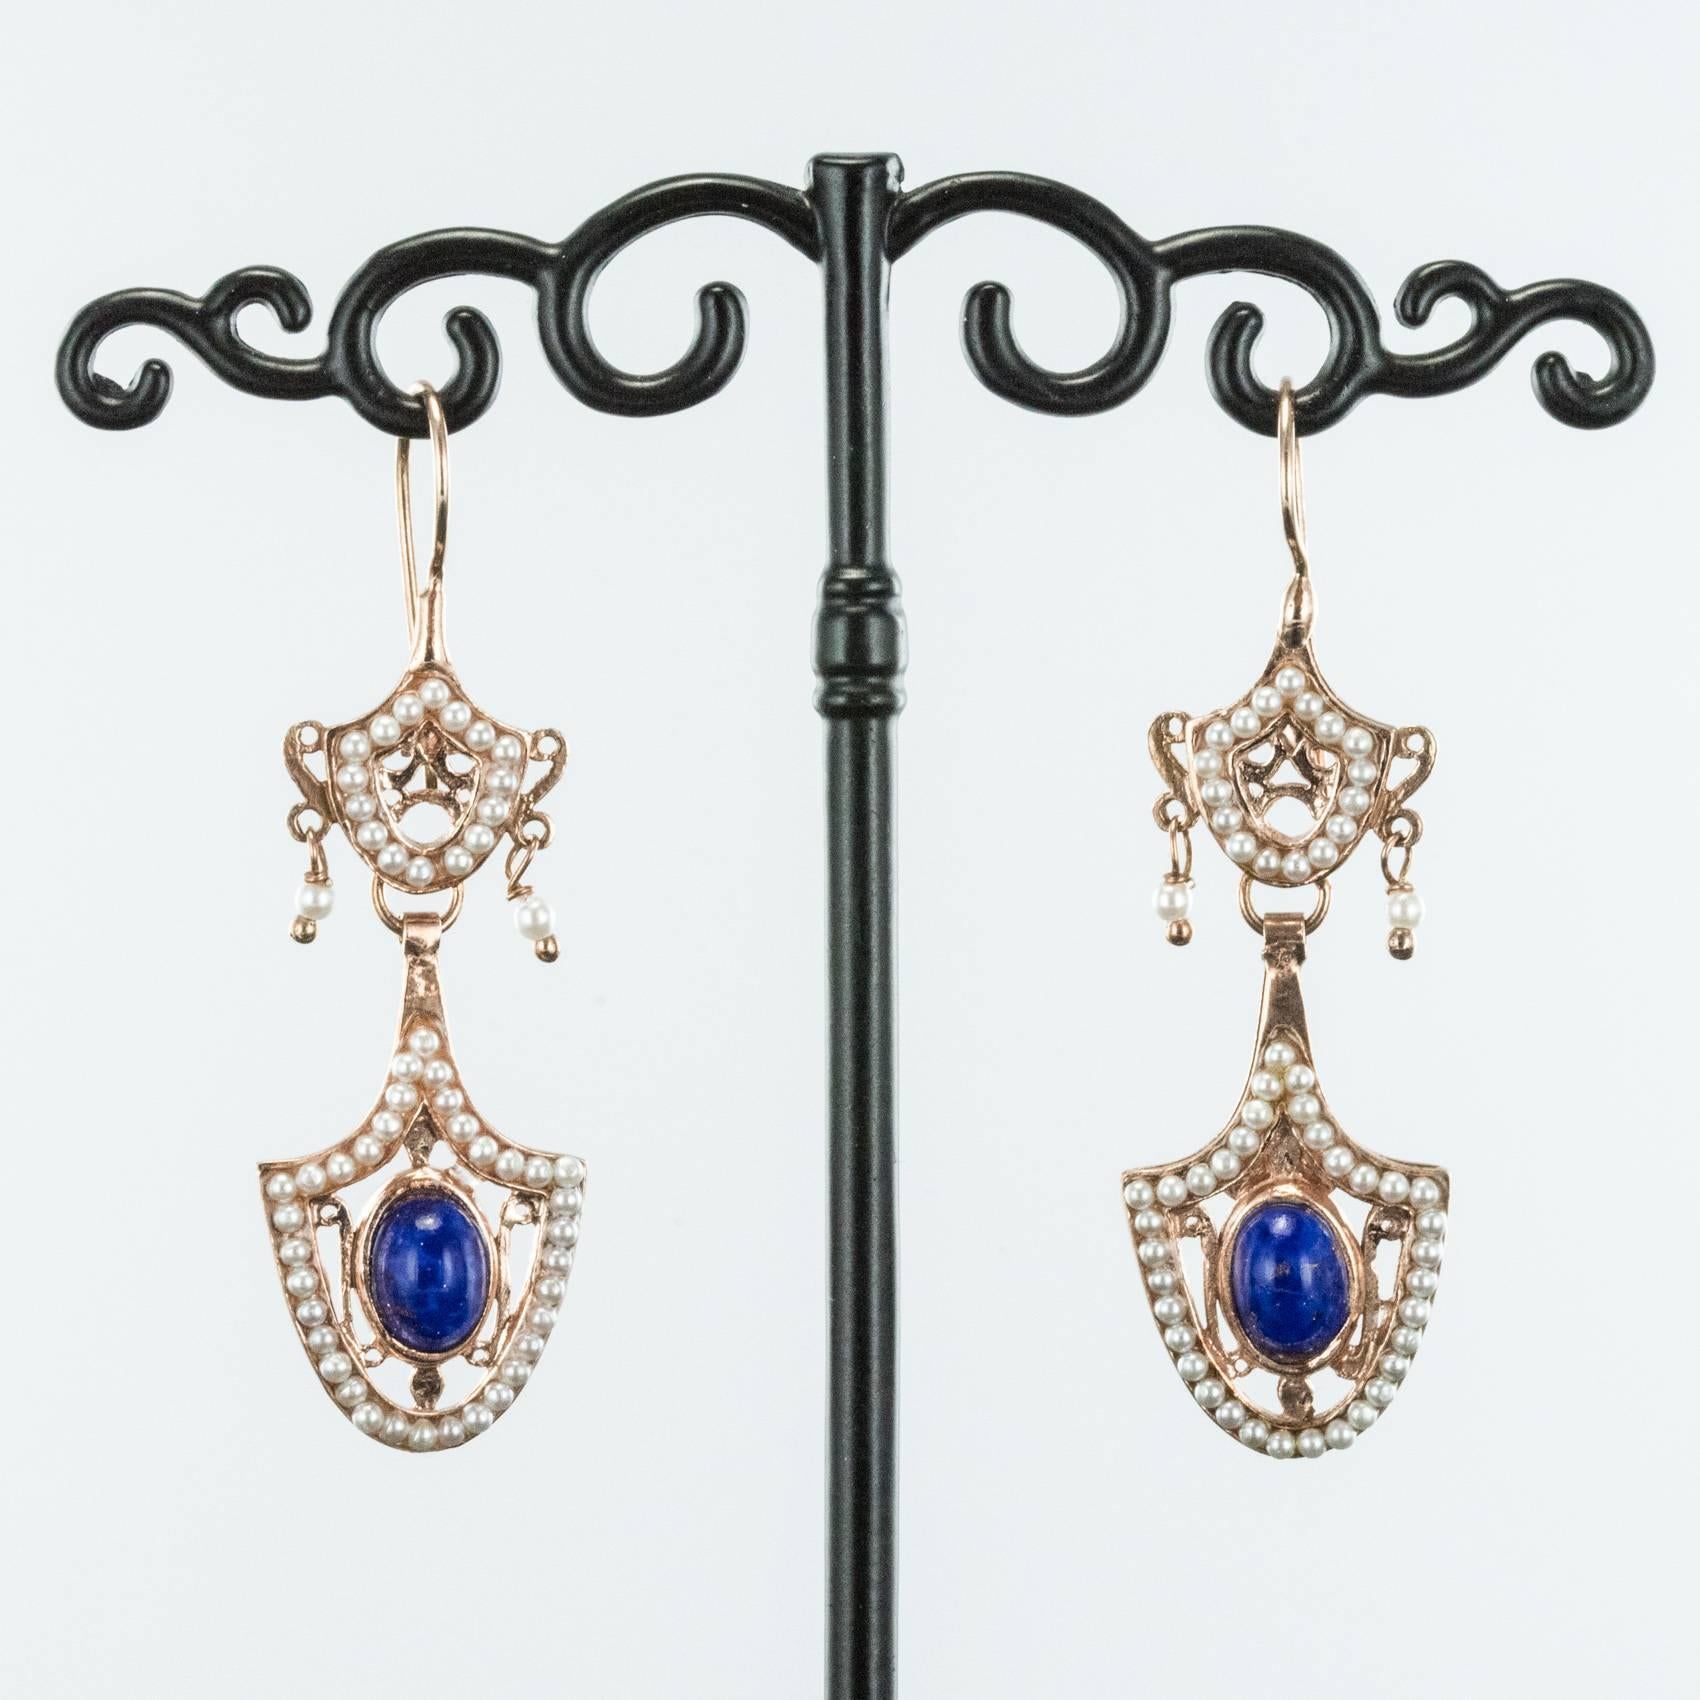 Baroque Italian Antique Style Vermeil Dangle Earrings